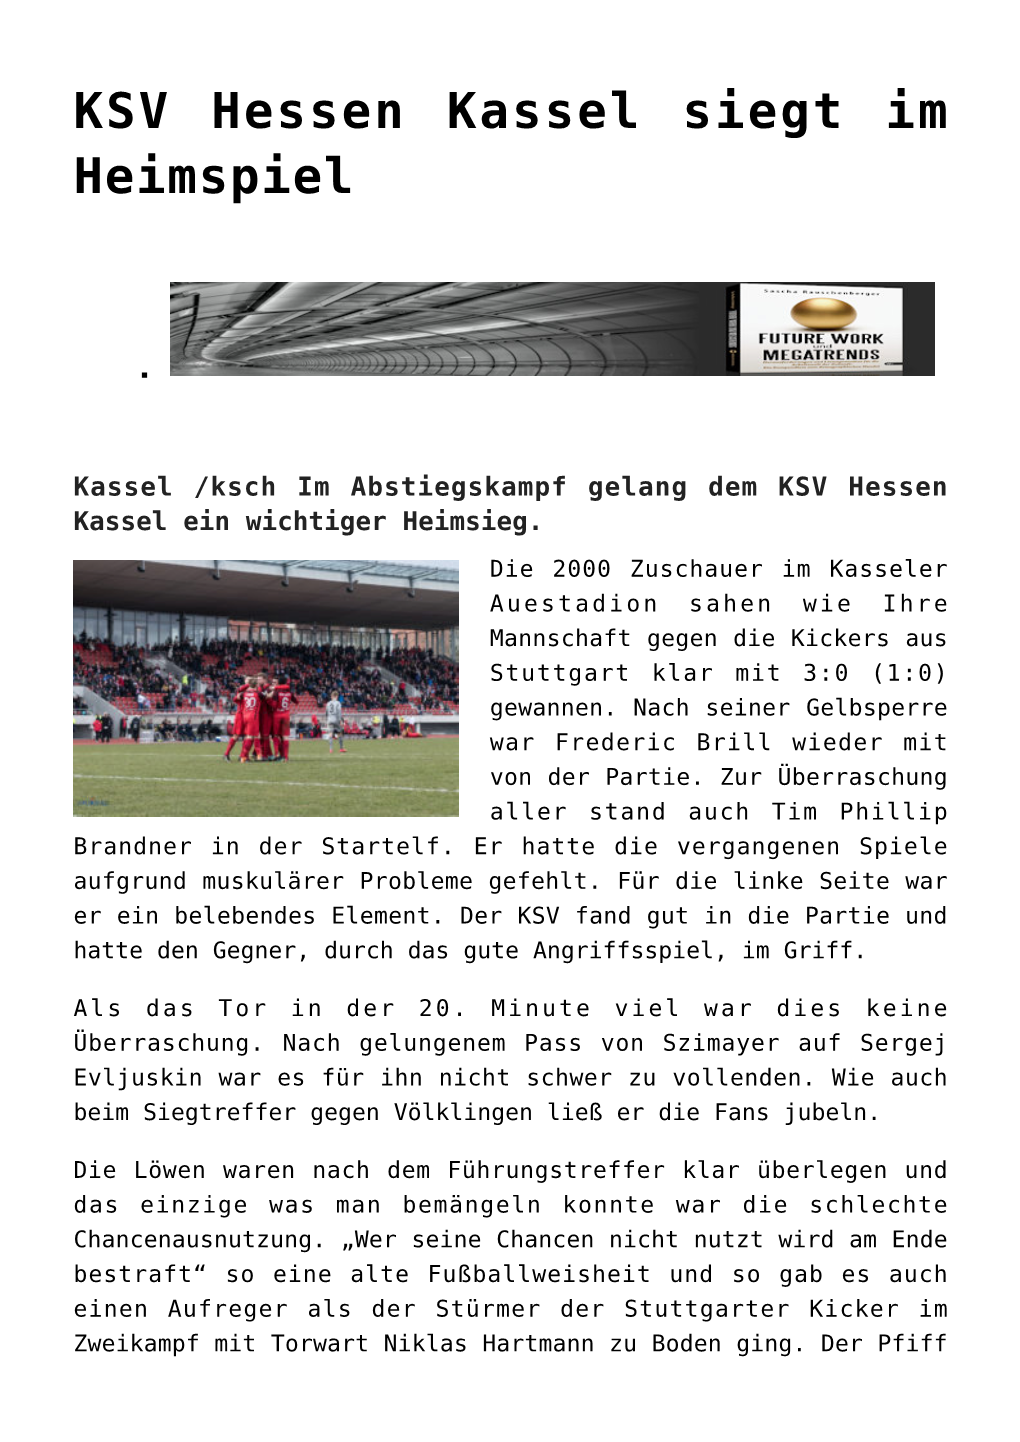 KSV Hessen Kassel Siegt Im Heimspiel